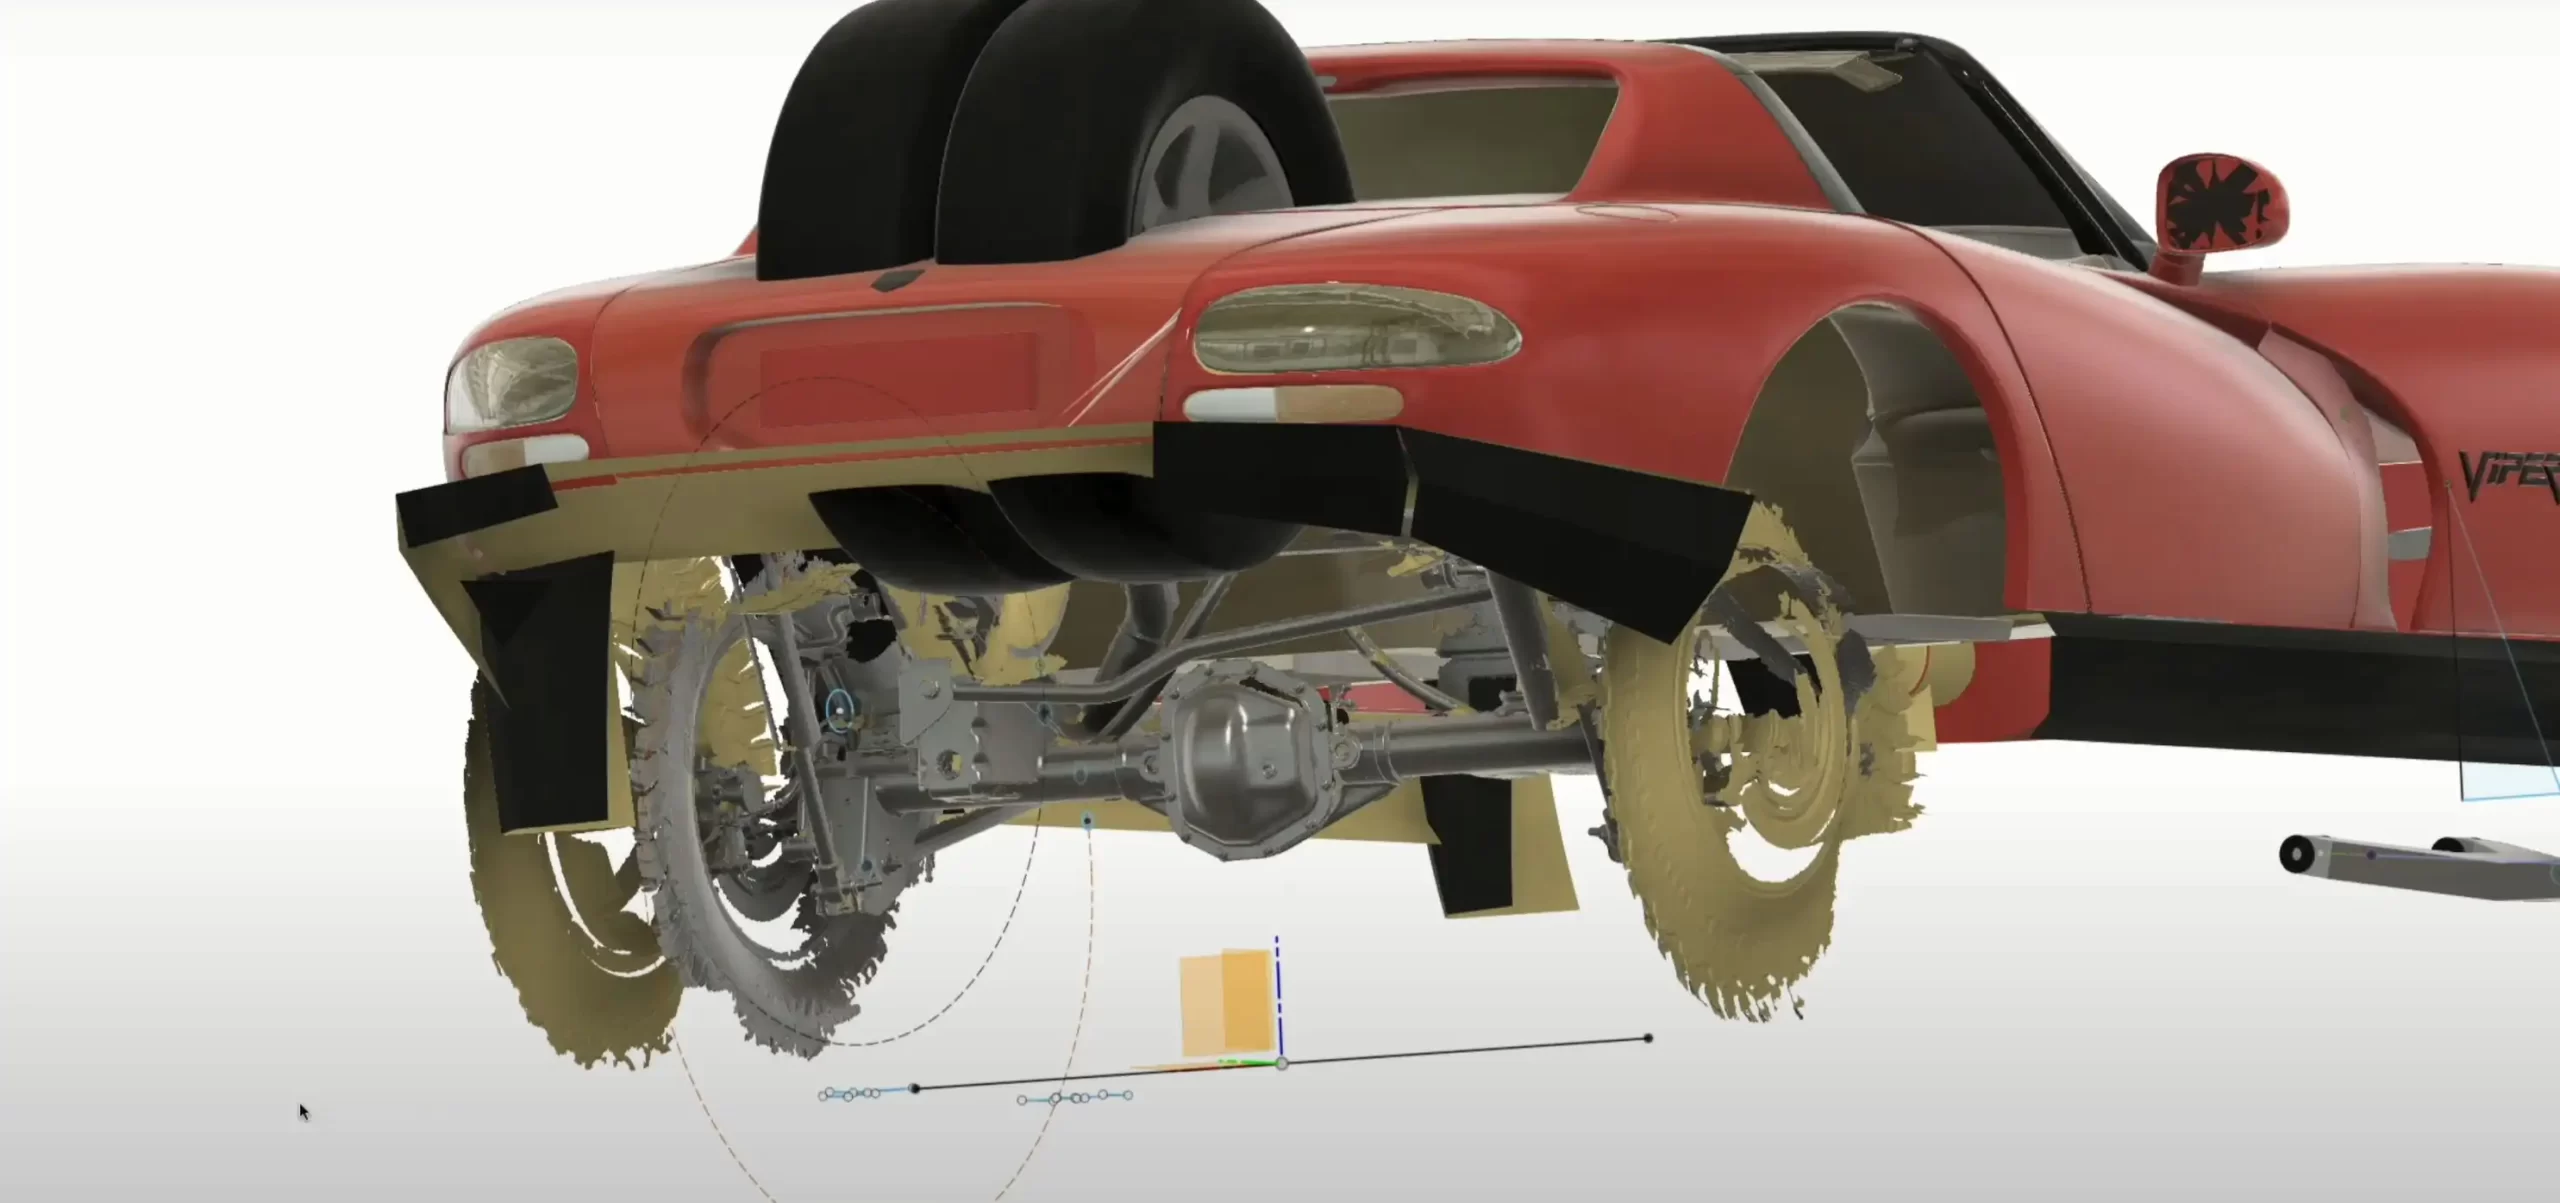 Gekke off-road Dodge Viper: project van ex-Tesla-ingenieur Matt Brown!